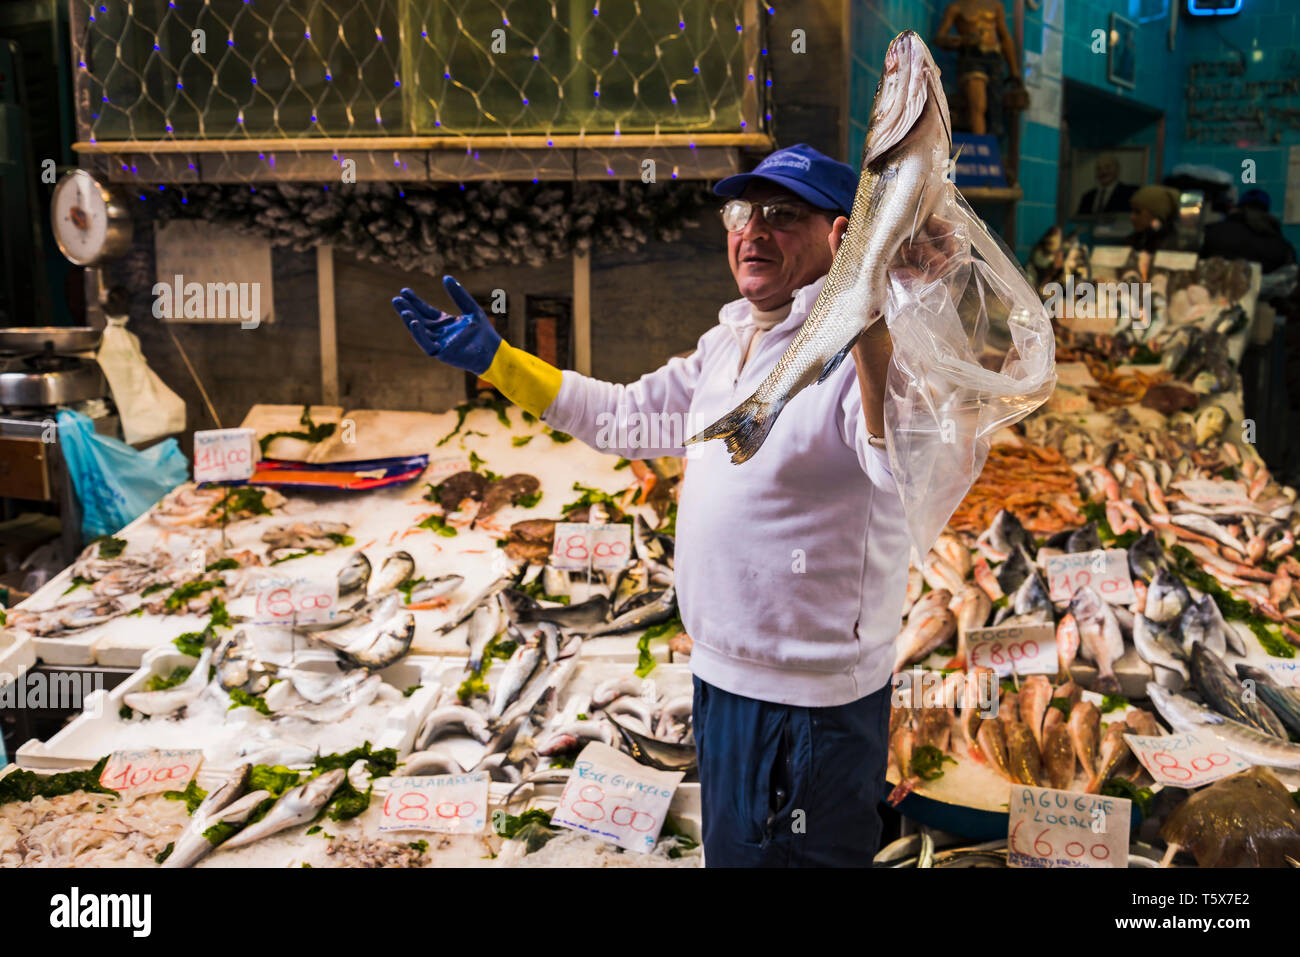 NAPLES, ITALIE - 14 DÉCEMBRE : vendeur de poisson montrent un poisson dans un marché le 14 décembre 2014 à Naples, Italie Banque D'Images